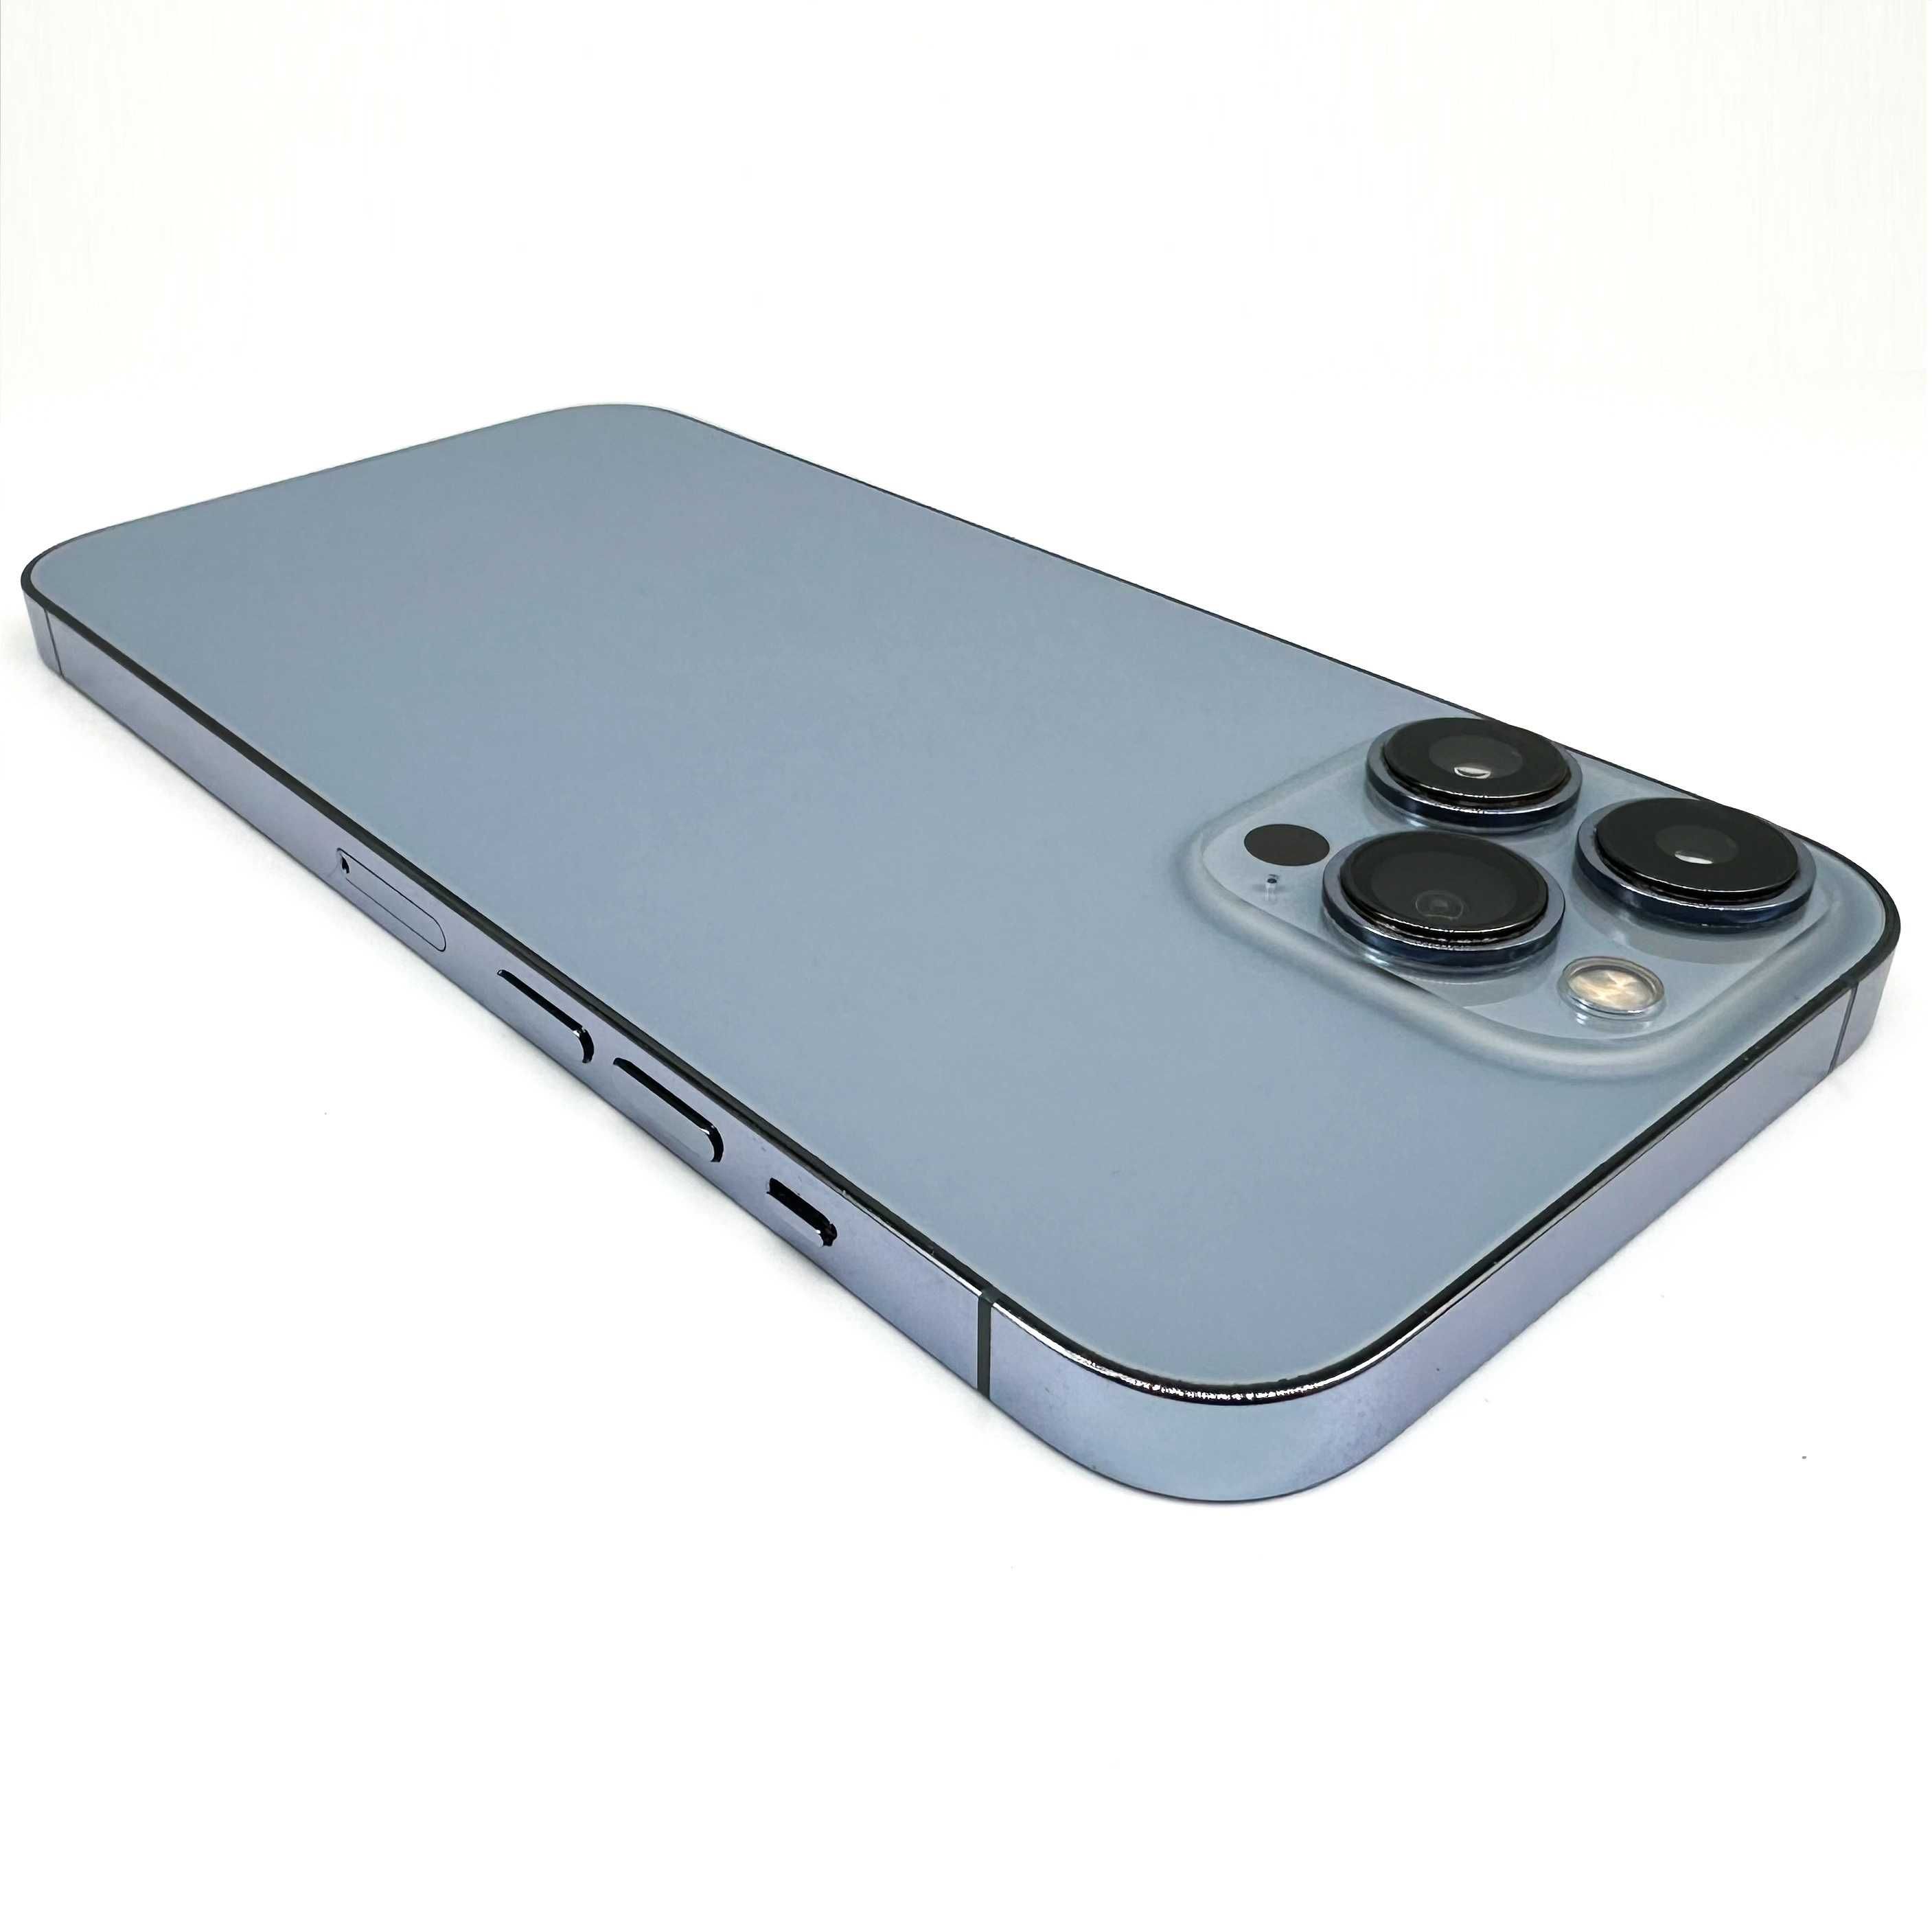 iPhone 13 Pro Max 256gb Niebieski Bateria 100% W-wa Żelazna 89 3100zł